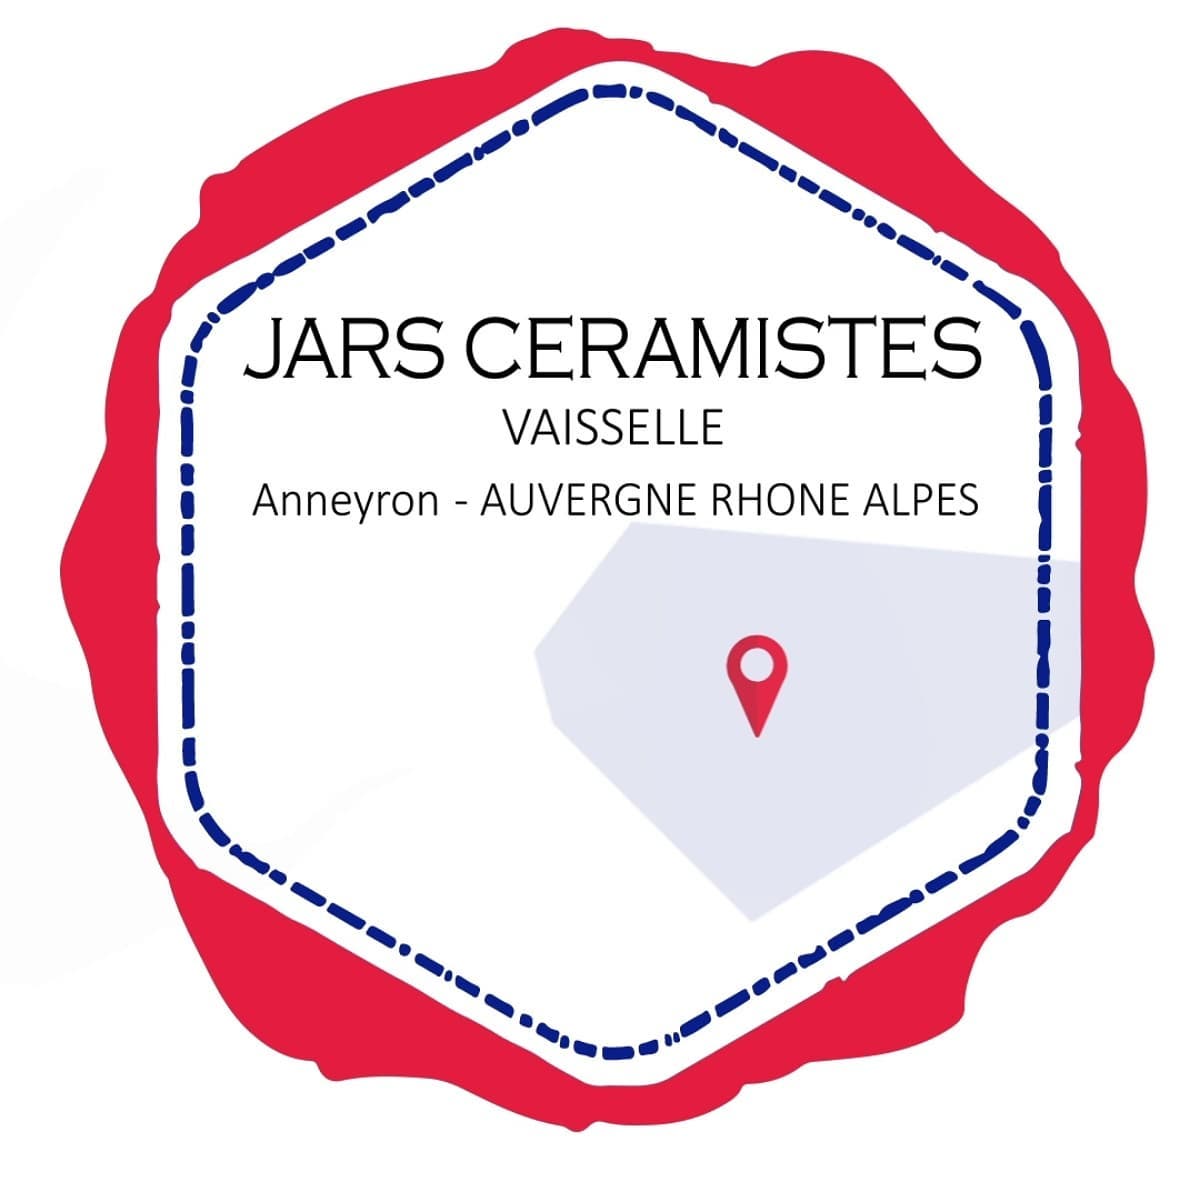 JARS Céramistes vaisselle made in France